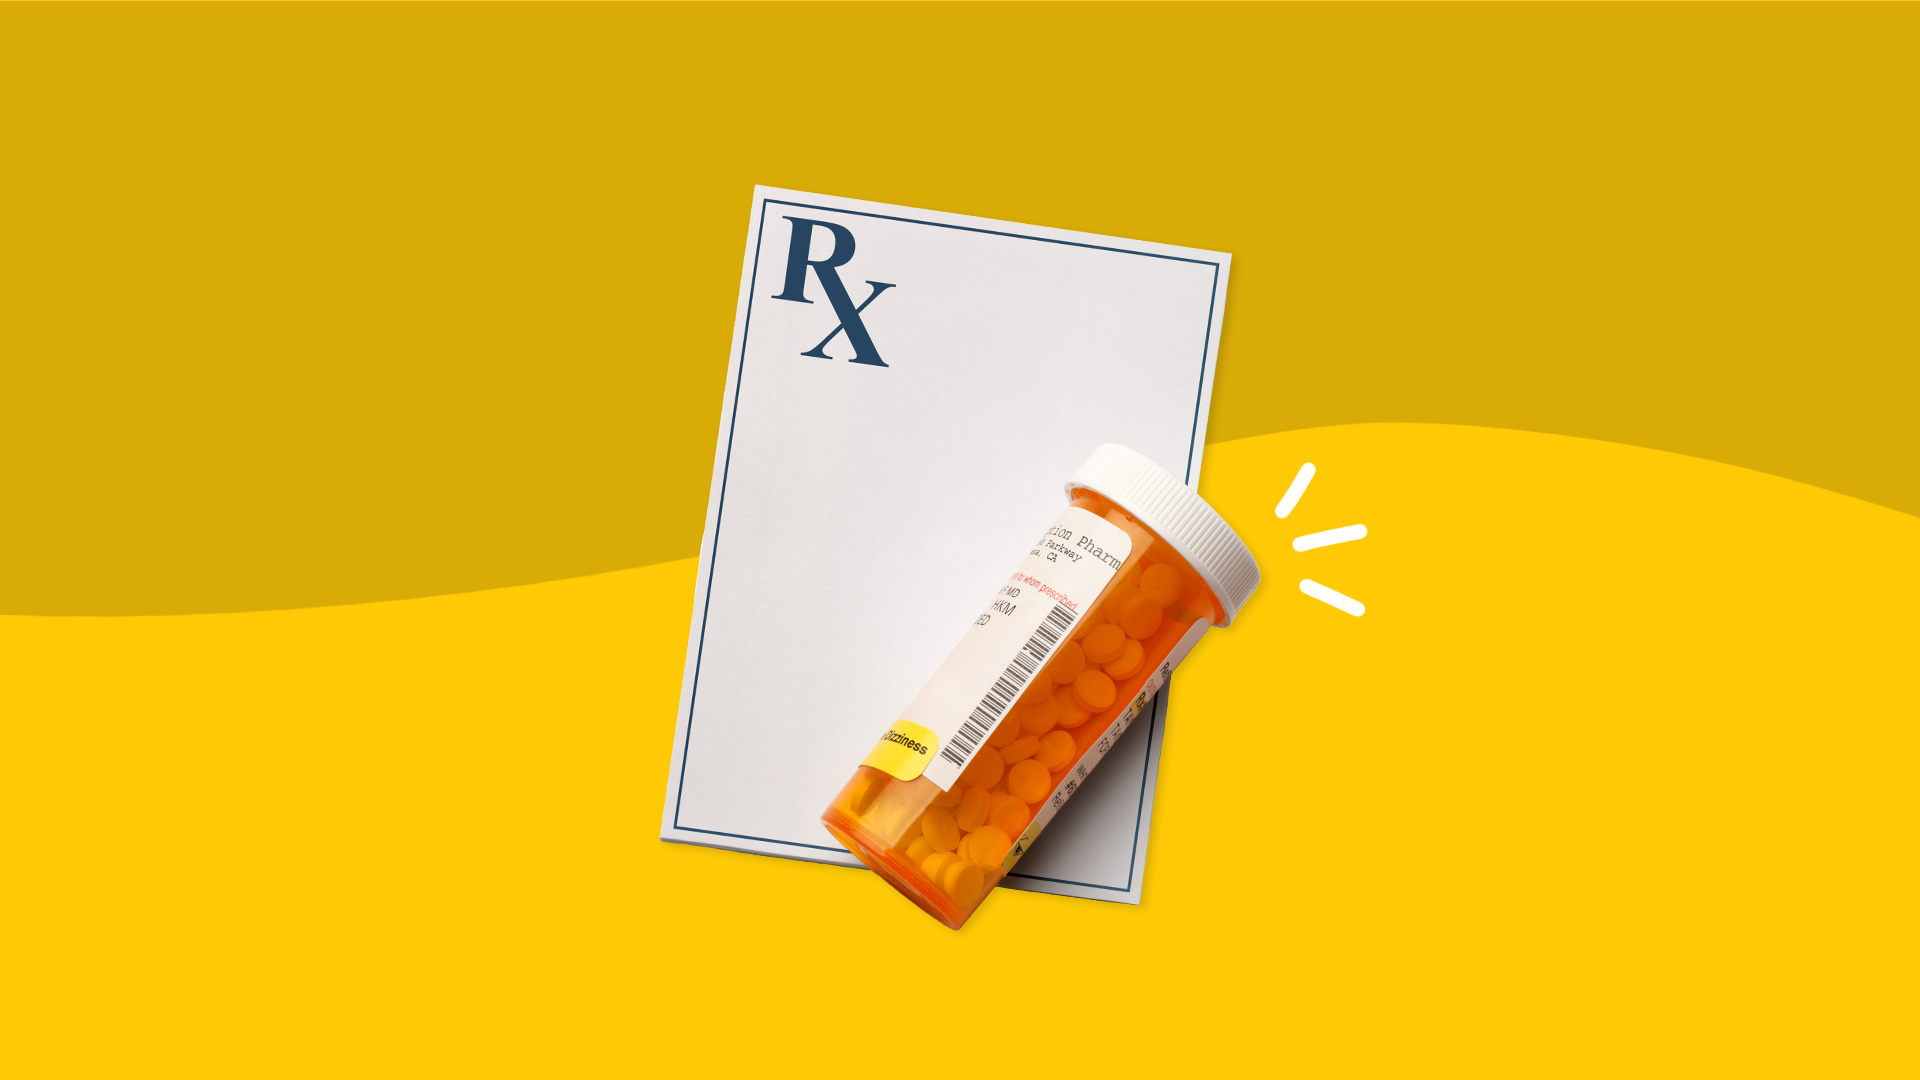 Prescription pad and bottle: Paxil dosages: Myrbetriq side effects